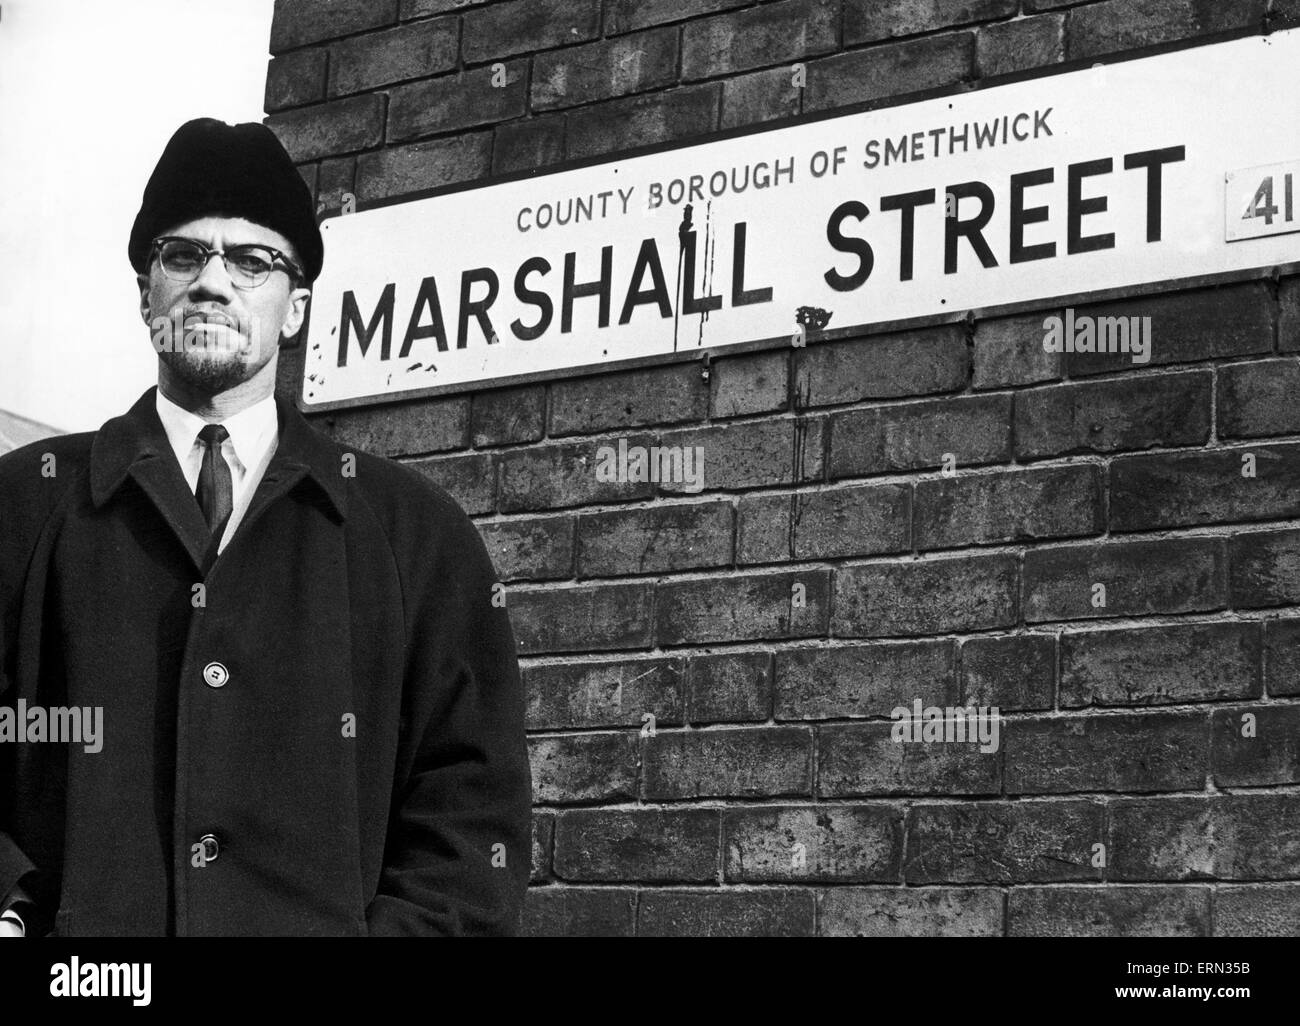 Malcolm X musulmani afro-americano ministro e attivista per i diritti umani pone accanto alla strada segno per il Marshall Street in Smethwick durante una visita alle Midlands. L'attivista per i diritti umani poste accanto alla targhetta, camminava a una cinquantina di metri fino alla strada, sorrise Foto Stock